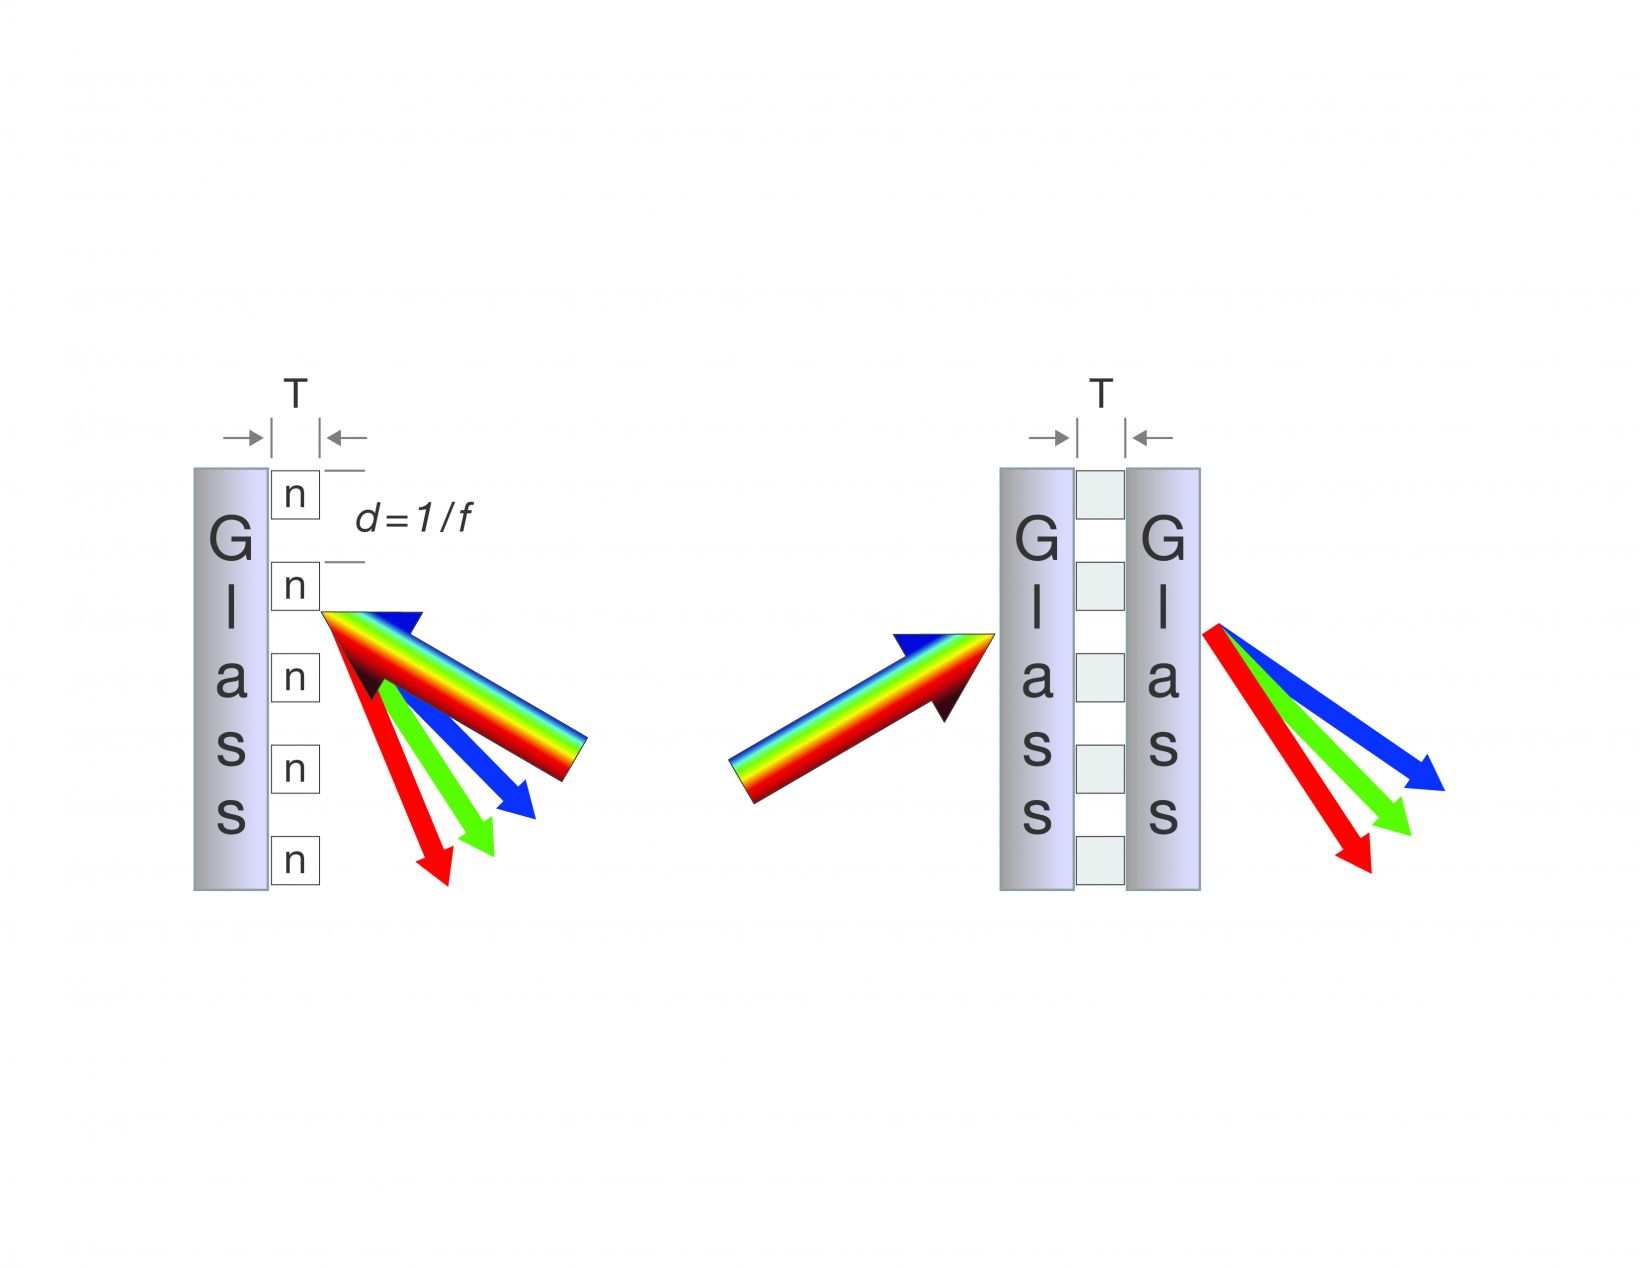 Diagramas de seção transversal dos mecanismos de difração por grades de relevo de superfície e grades holográficas de fase de volume